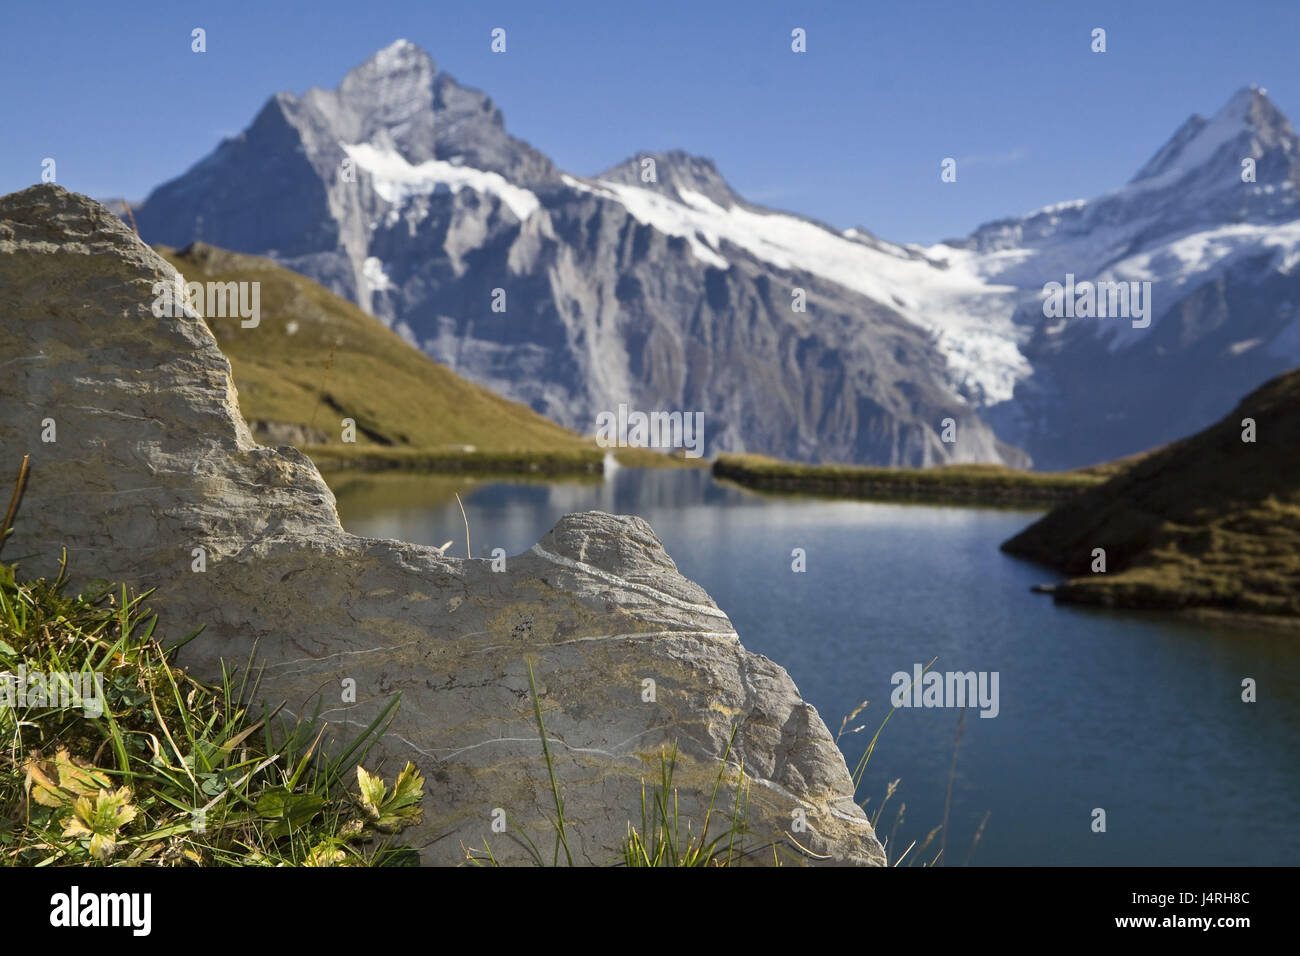 Prospettiva, il confronto delle dimensioni, pietra paesaggio di montagna, Brook Alpsee, Svizzera, le alpi Bernesi, Grindelwald, meteo avvisatore acustico (3692 m), spavento avvisatore acustico (4078 m), Foto Stock